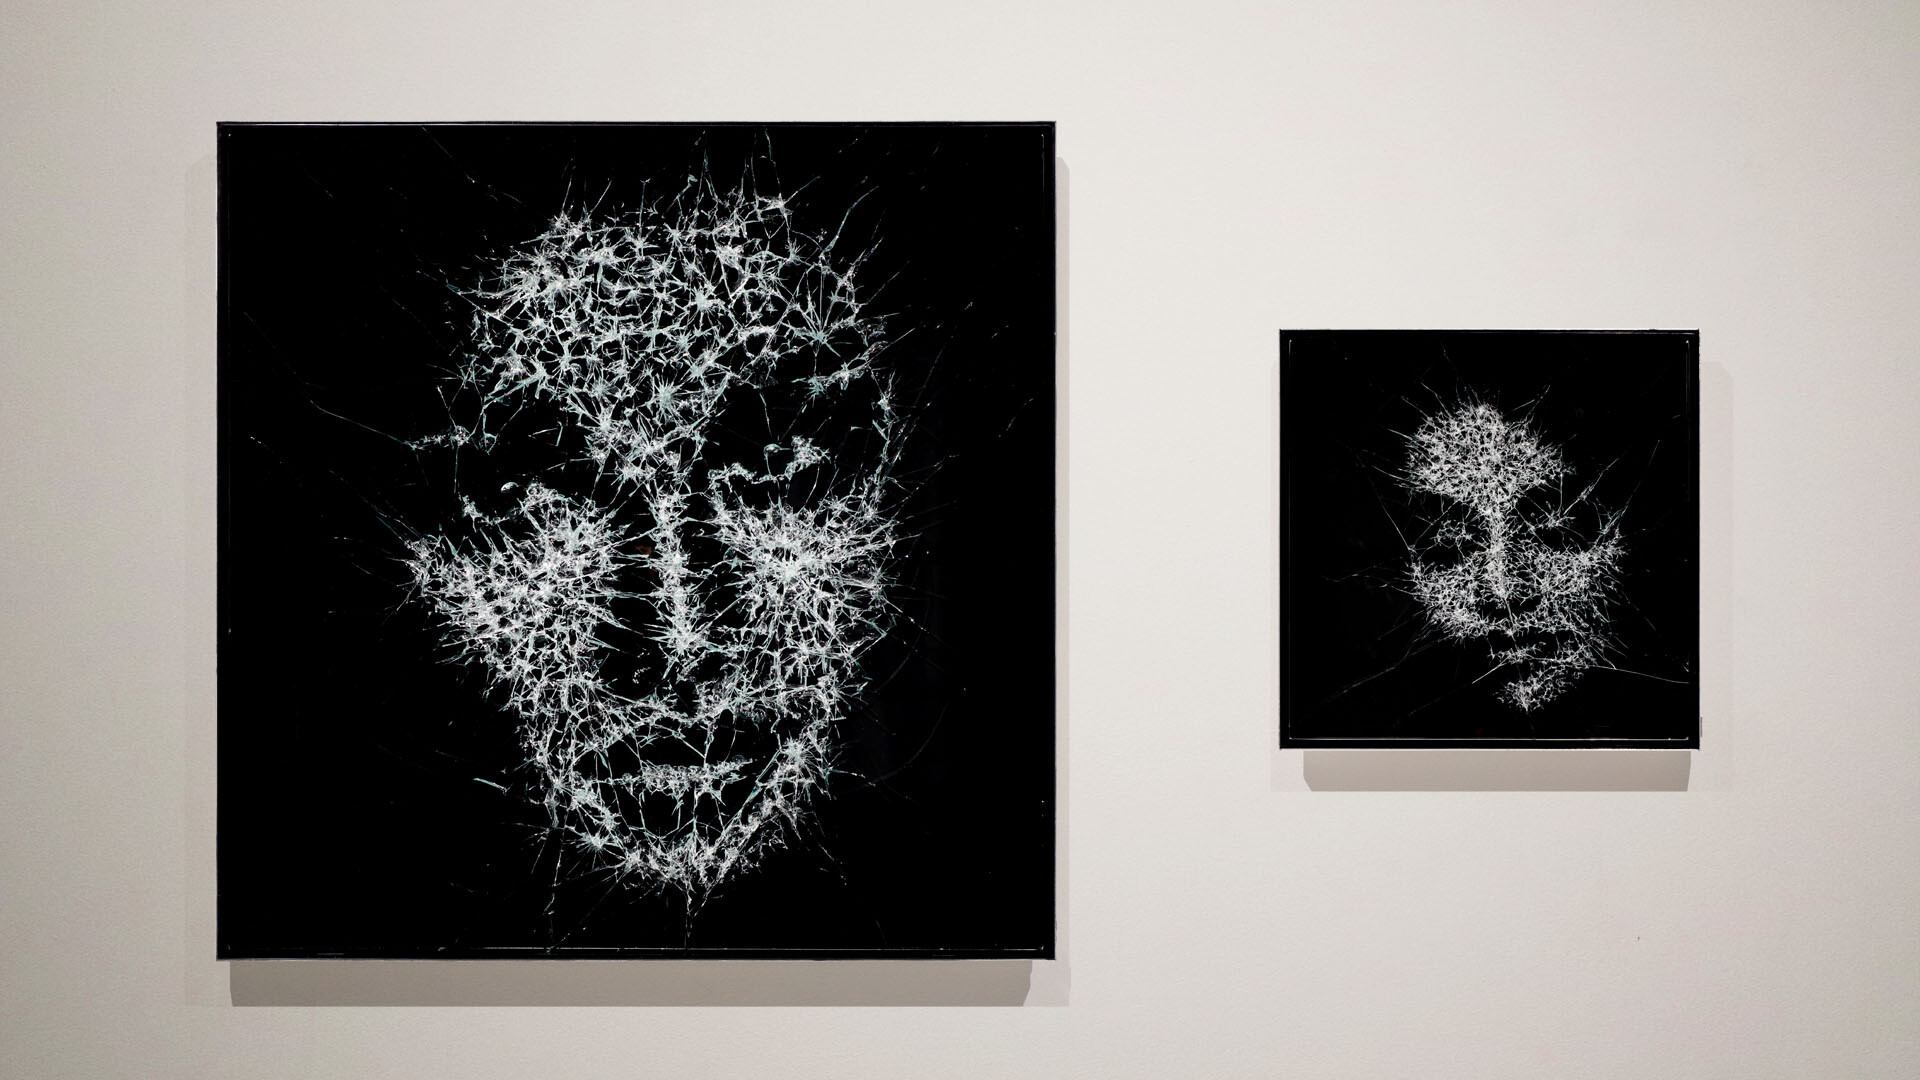 ออรัม แกลเลอรี (Aurum Gallery) จัดนิทรรศการศิลปินเดี่ยวครั้งแรกกับงาน "Shattered" โดยไซมอน เบอร์เกอร์ ศิลปินร่วมสมัยชาวสวิสผู้สร้างสรรค์งานจากกระจก